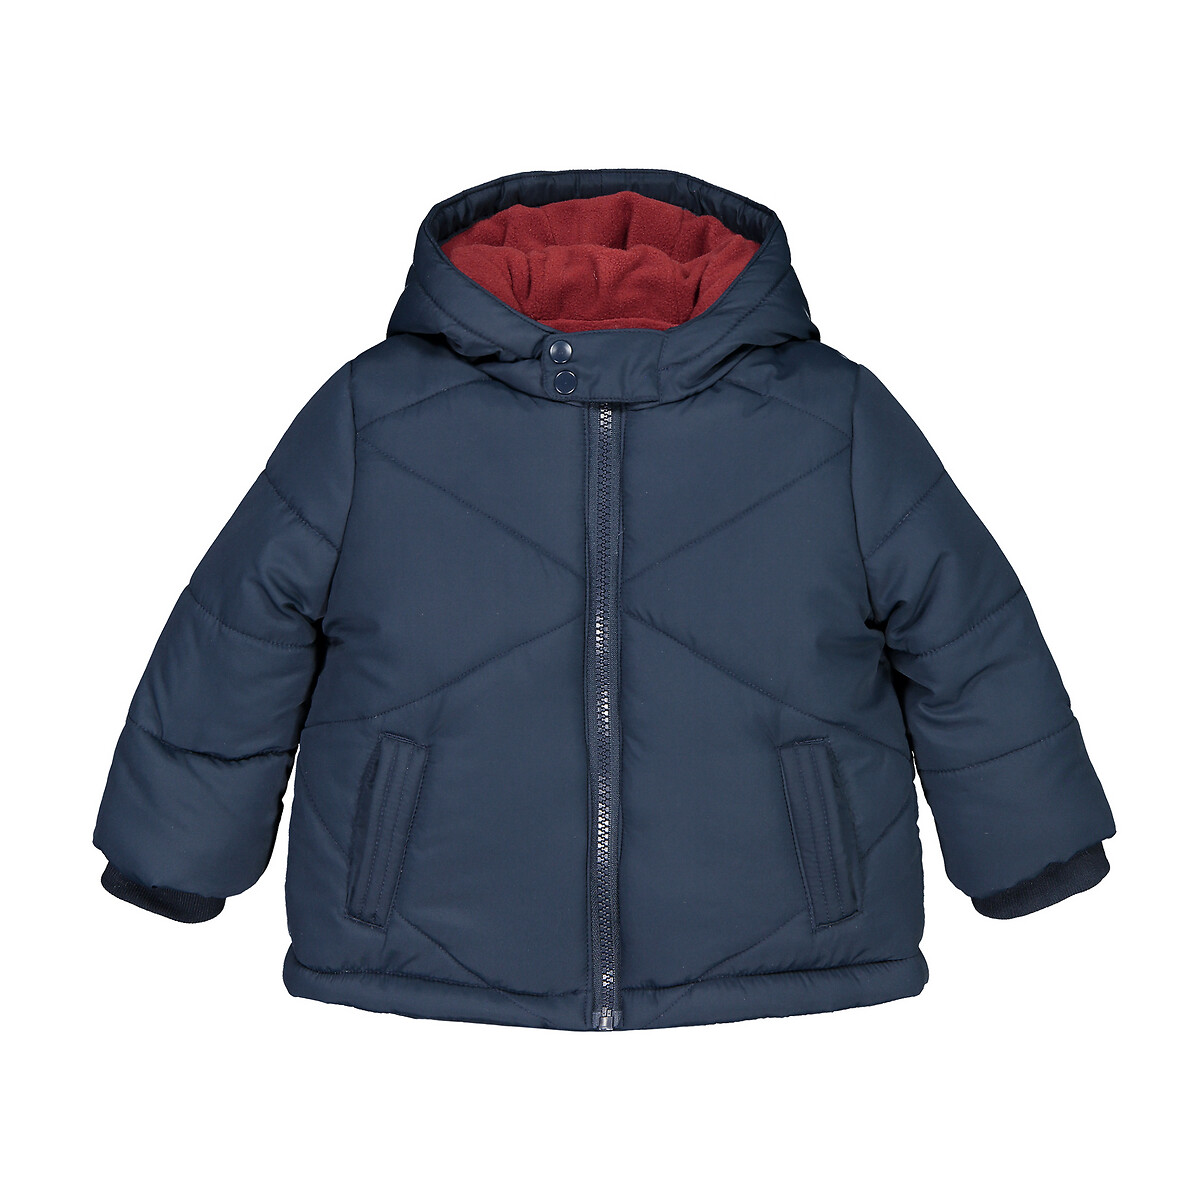 Куртка La Redoute Стеганая с капюшоном подкладка из флиса 3 мес-3лет 3 года - 94 см синий, размер 3 года - 94 см